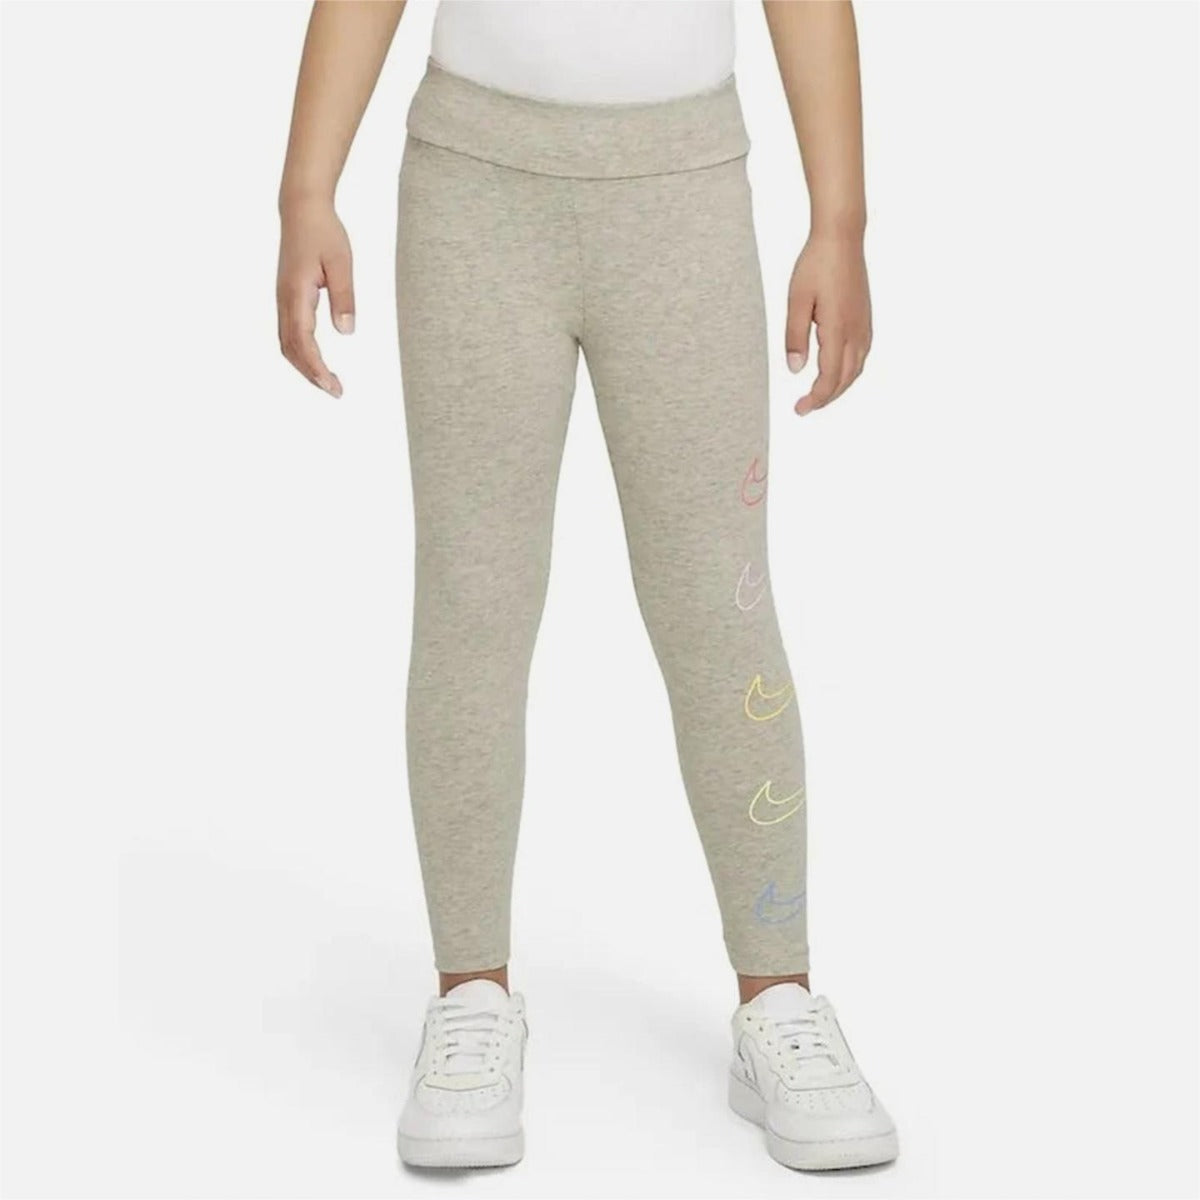 Nike Retro Rewind Legging-Hose für Kinder, Mädchen – Grau